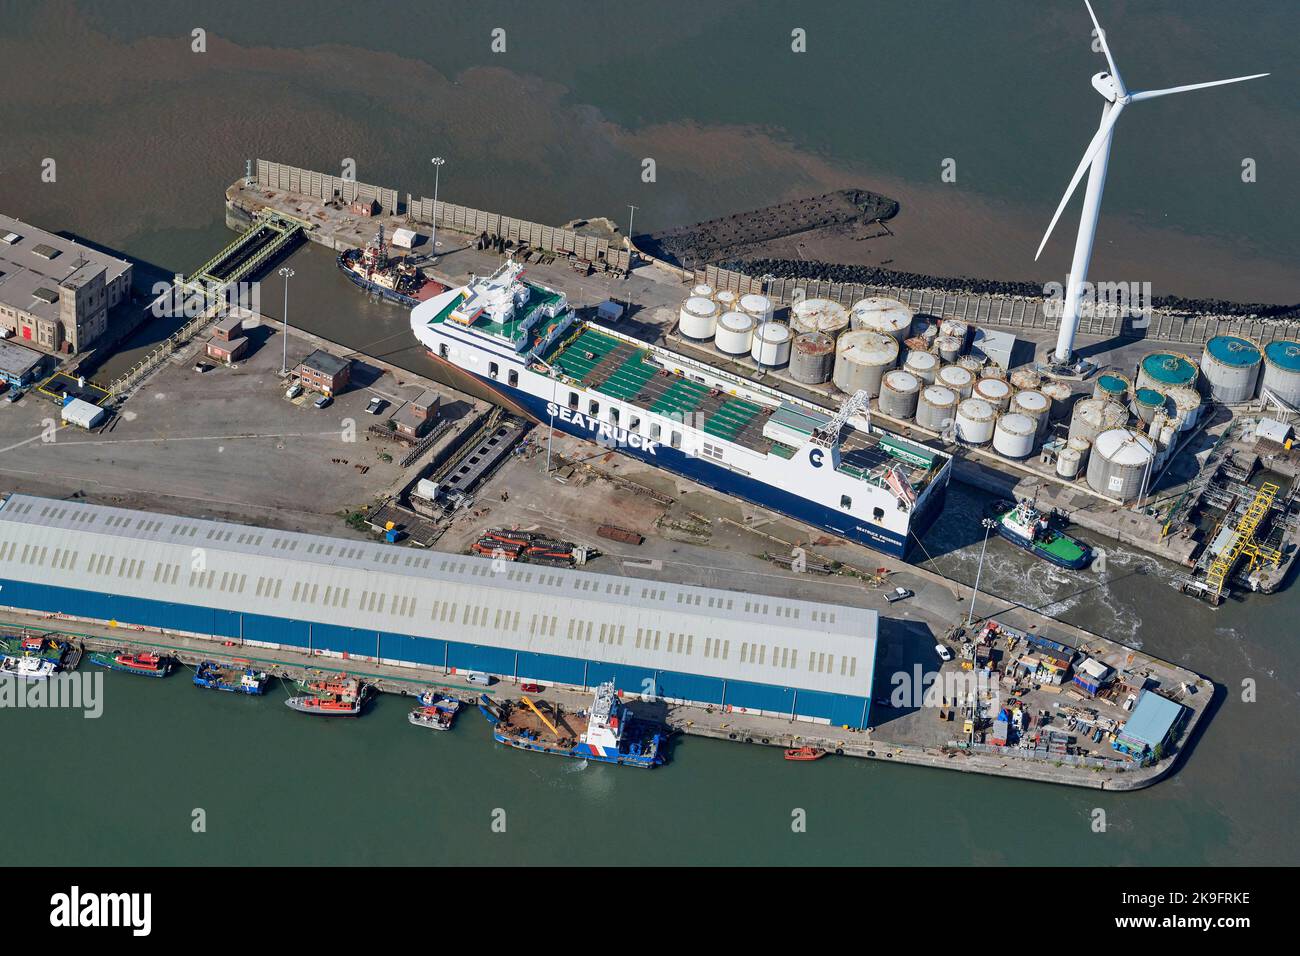 Eine Luftaufnahme der Sea Truck Ferry, die Seaforth Docks, Merseyside, Liverpool, Nordwestengland, Großbritannien verlässt Stockfoto